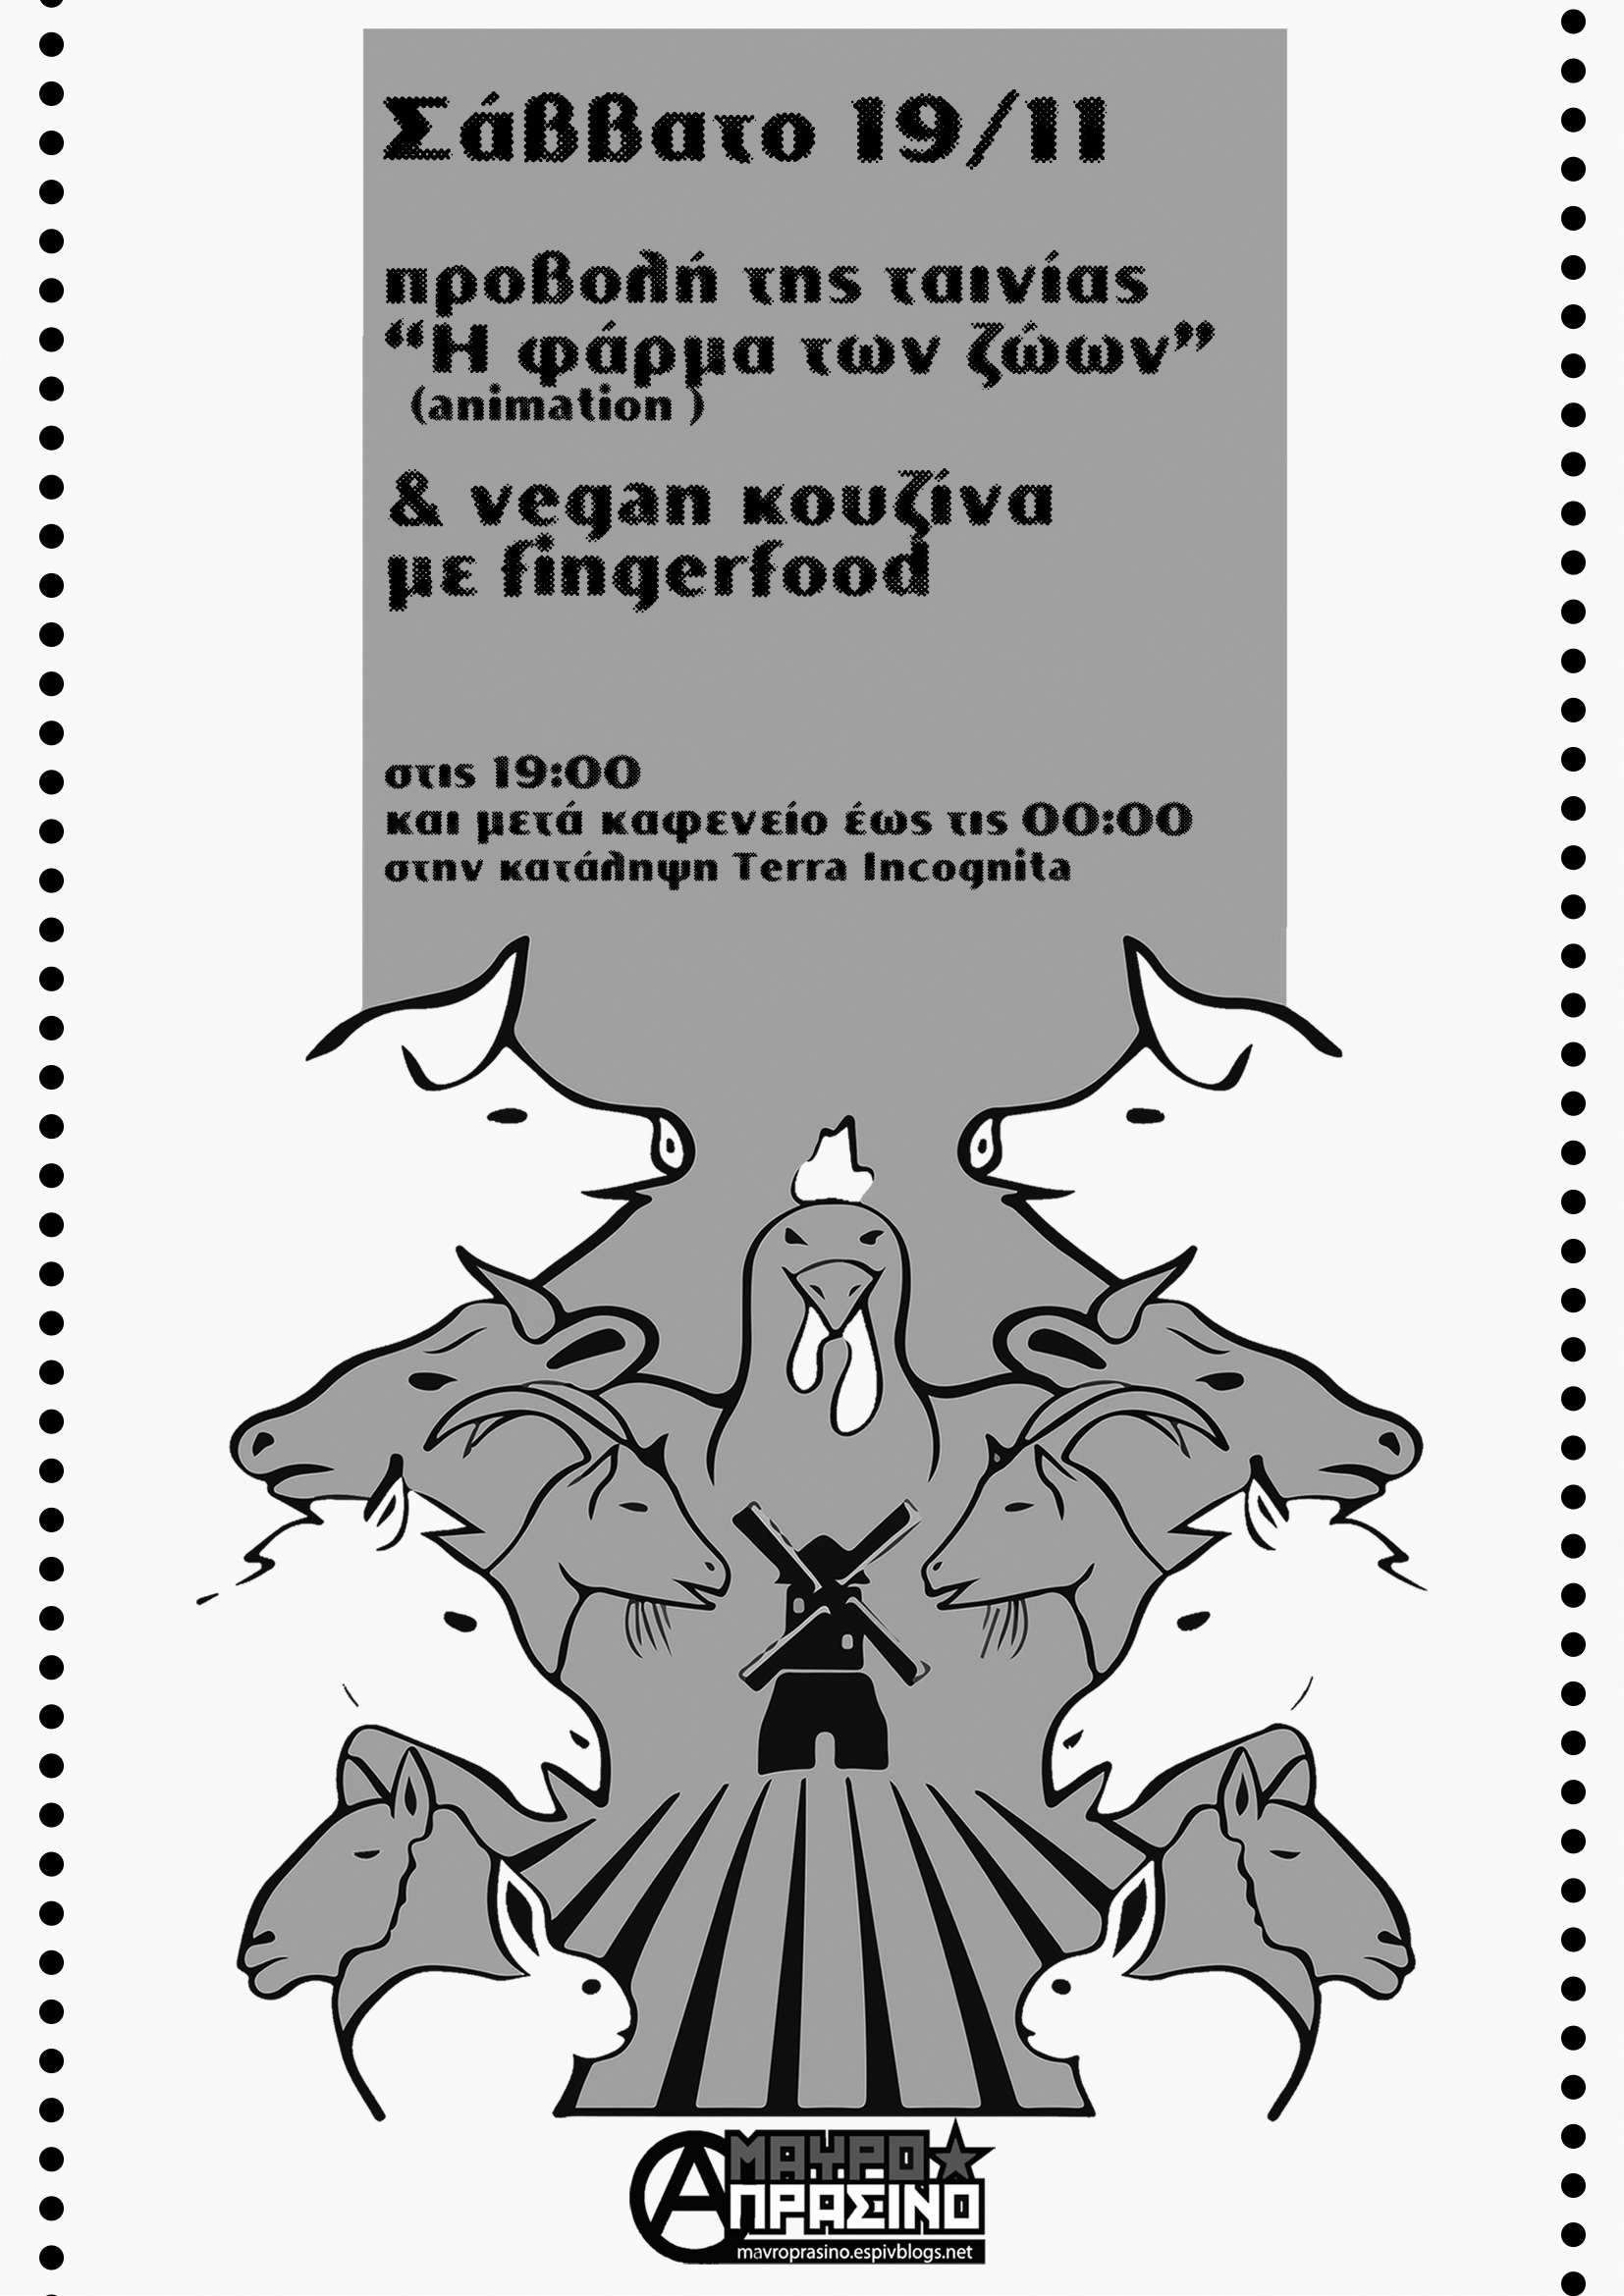 Θεσσαλονίκη: Προβολή ταινίας και vegan κουζίνα [Σάββατο 19/11, 19:00]